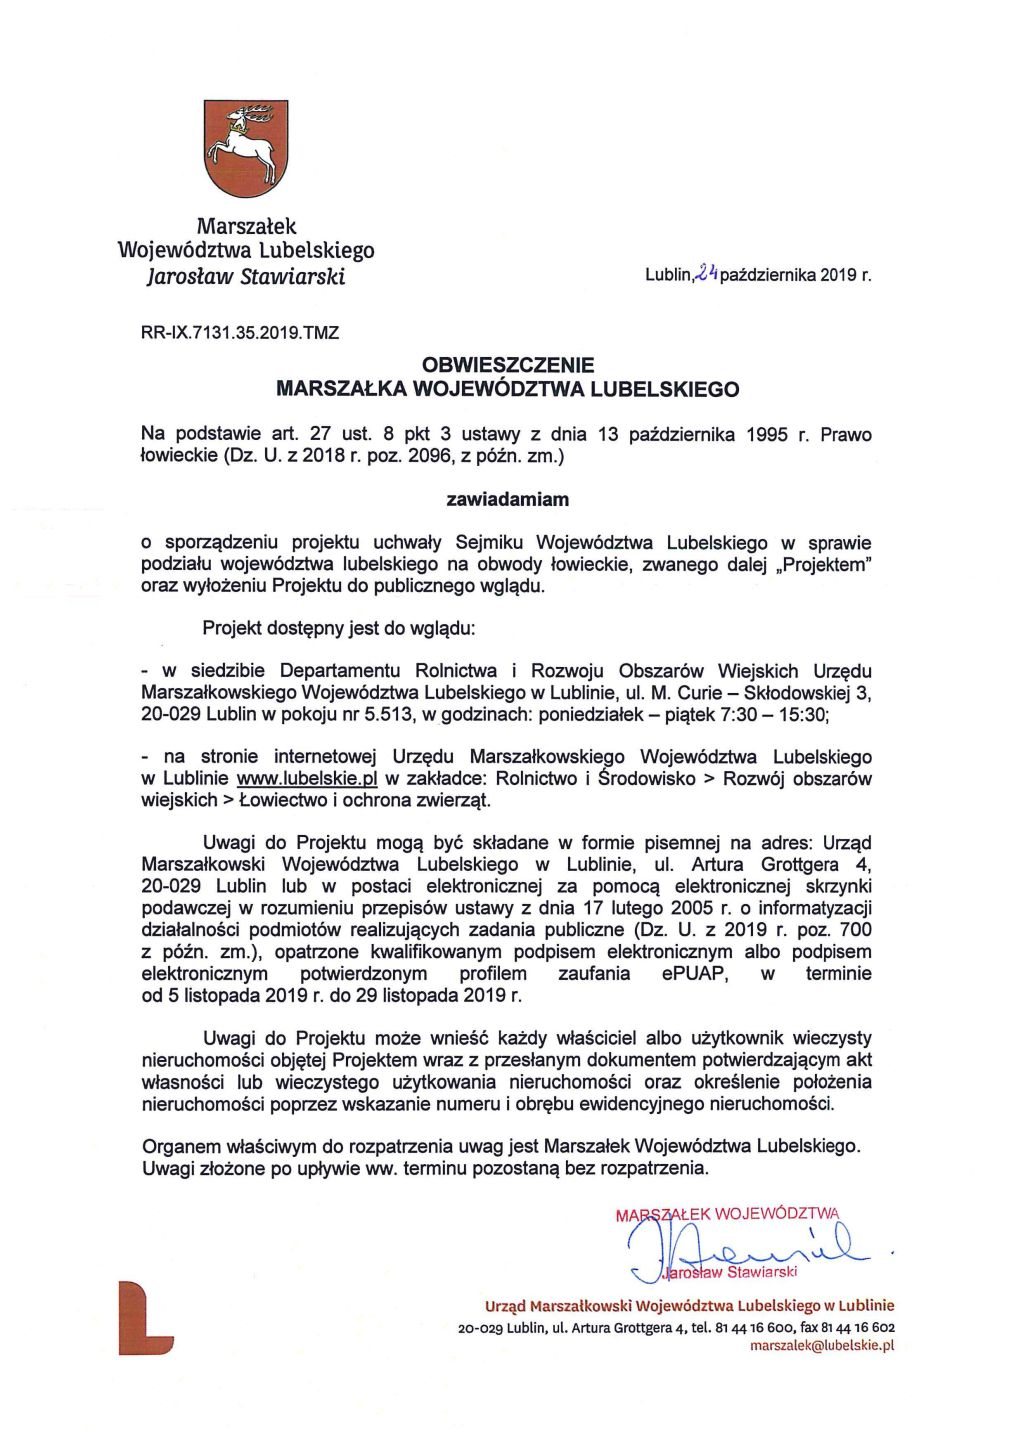 Obwieszczenie Marszałka Województwa Lubelskiego o sporządzeniu projektu uchwały w sprawie podziału województwa lubelskiego na obwody łowieckie